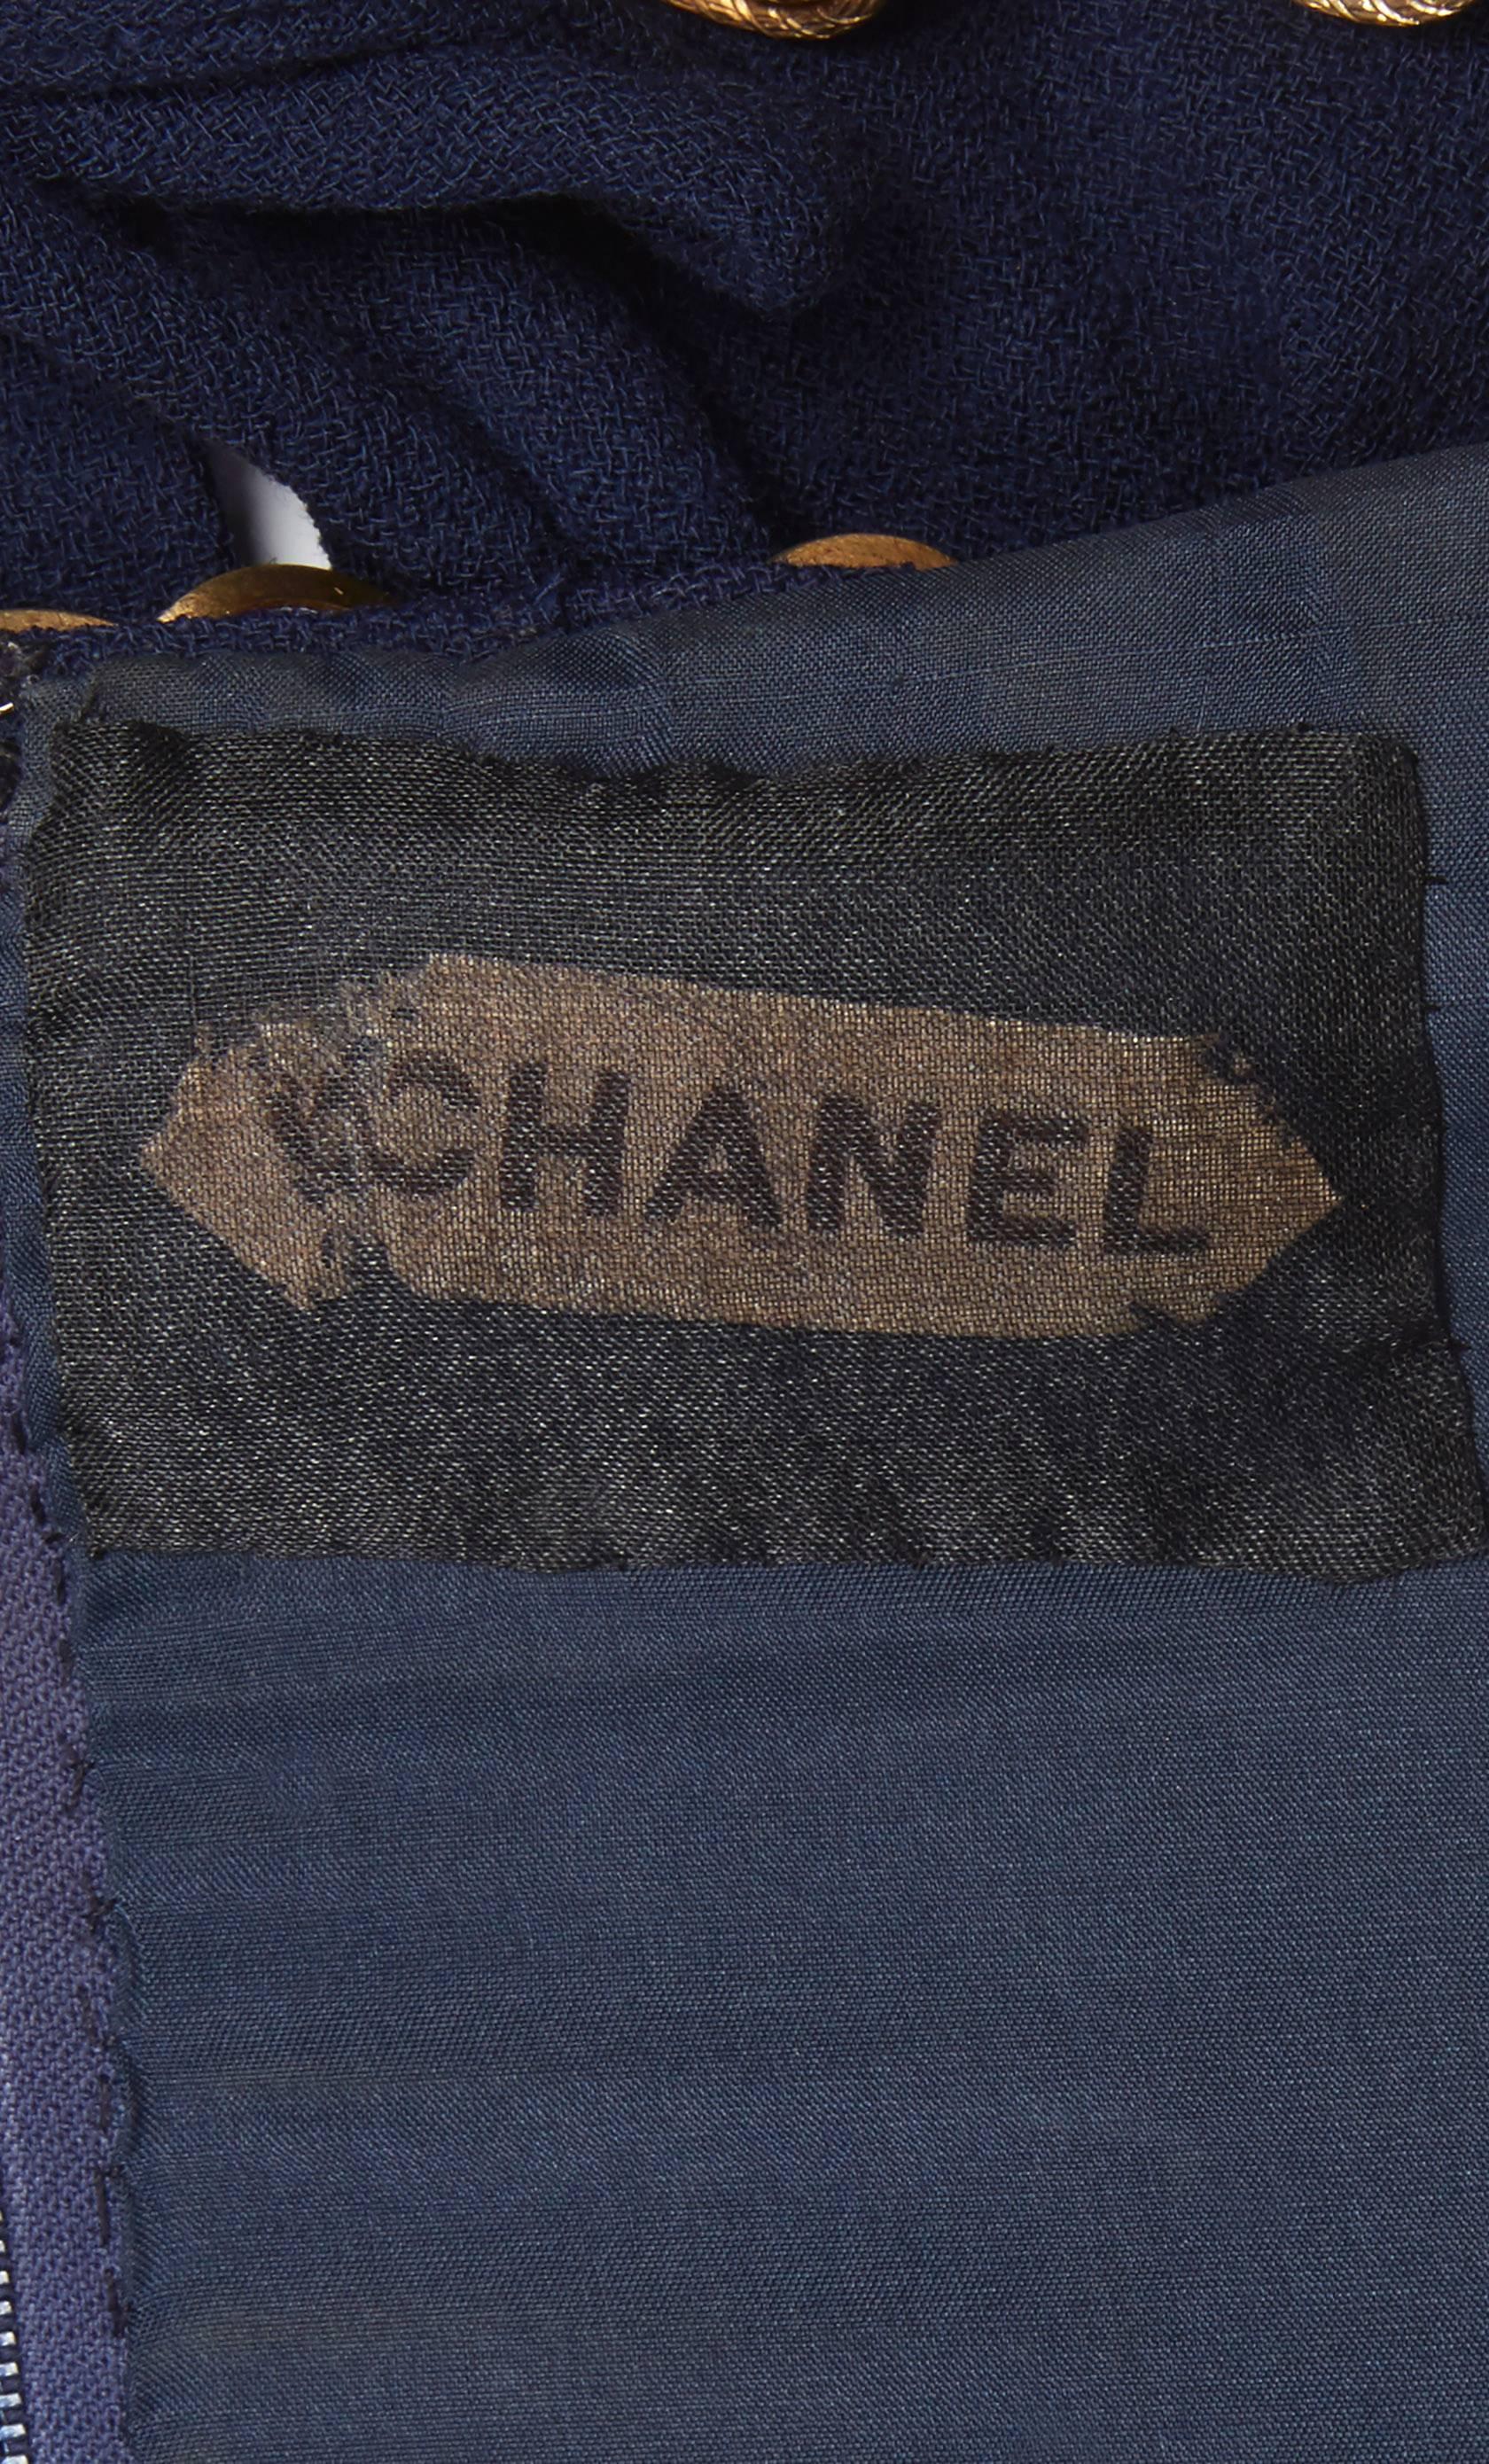 Chanel haute couture navy top, circa 1960 1